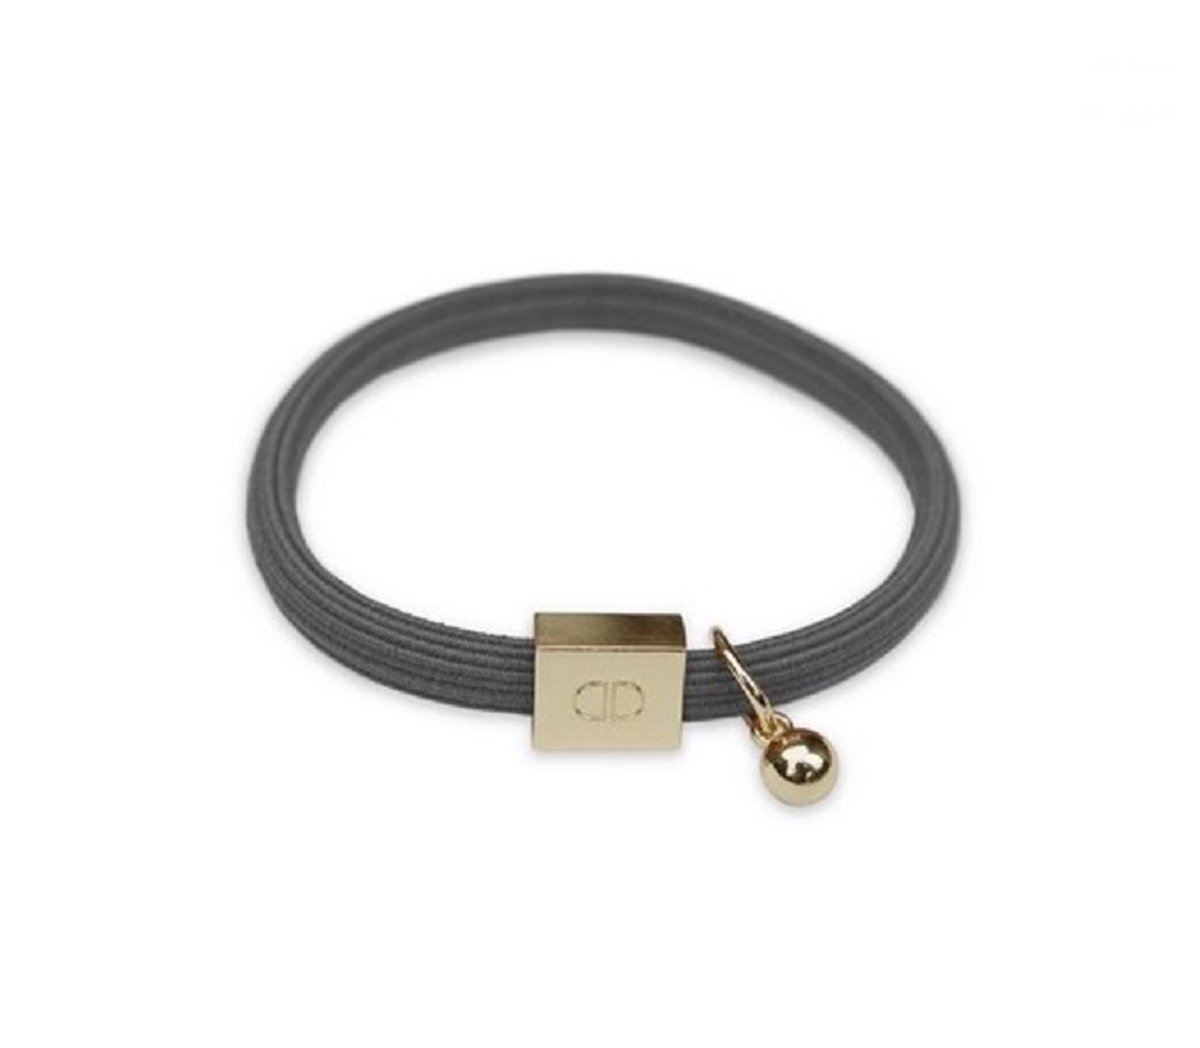 Elastische armband - donkergrijs - gouden details - niet opgerekt 5,5 cm doorsnede - dikte 0,5 cm